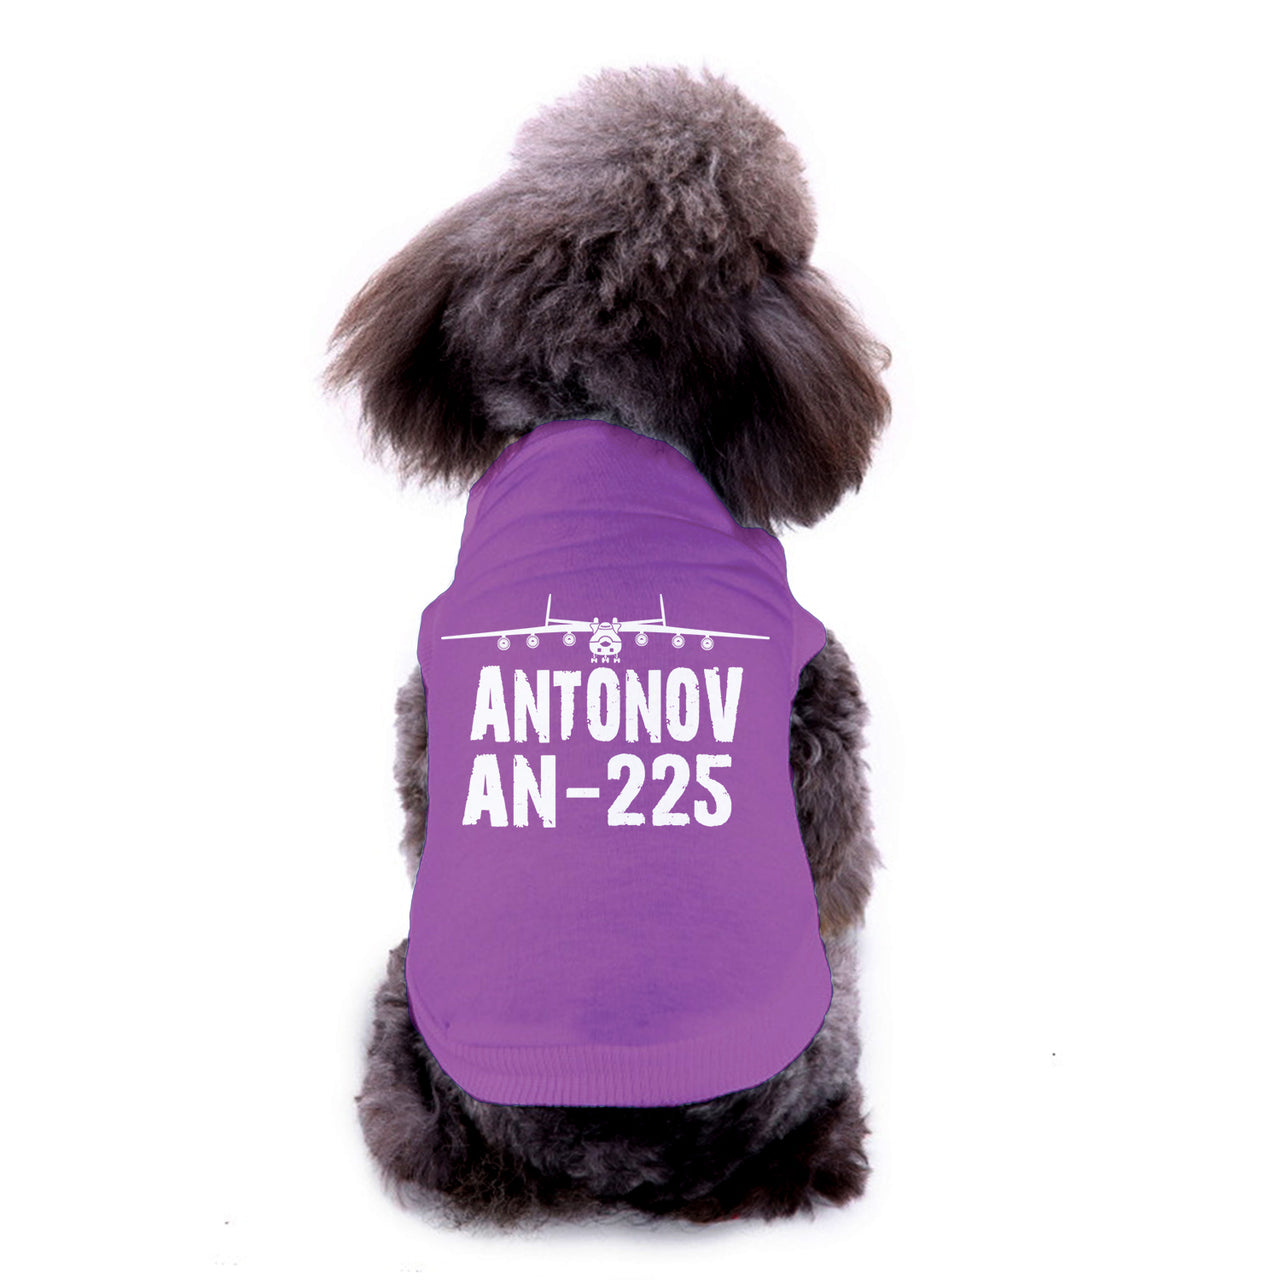 Antonov AN-225 & Plane Designed Dog Pet Vests